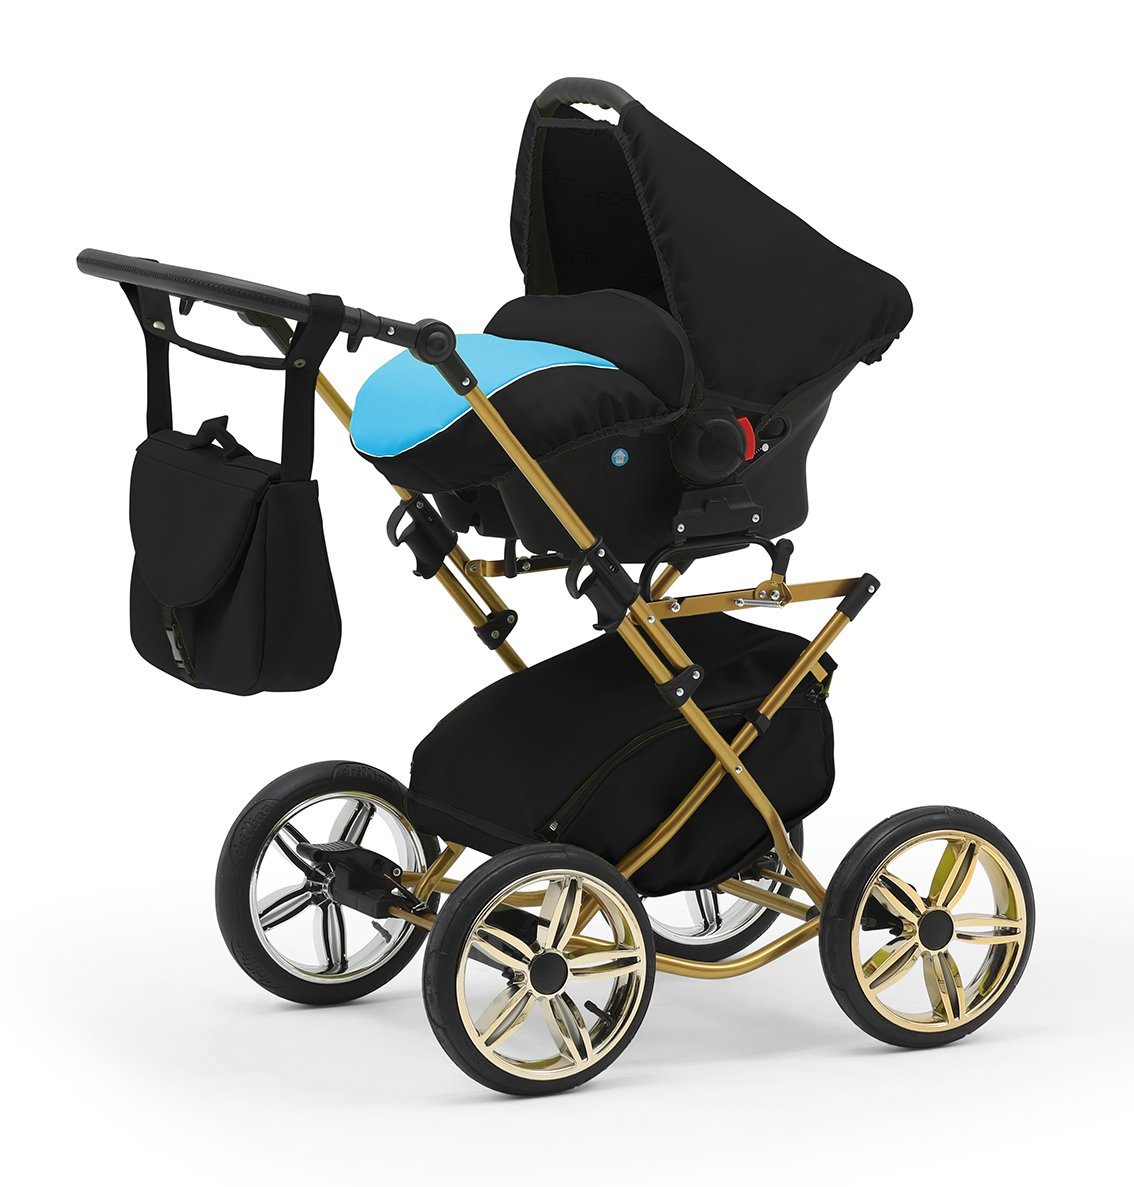 3 Autositz 13 Sorento Designs - in babies-on-wheels 10 inkl. Kombi-Kinderwagen Teile in 1 Türkis-Schwarz -